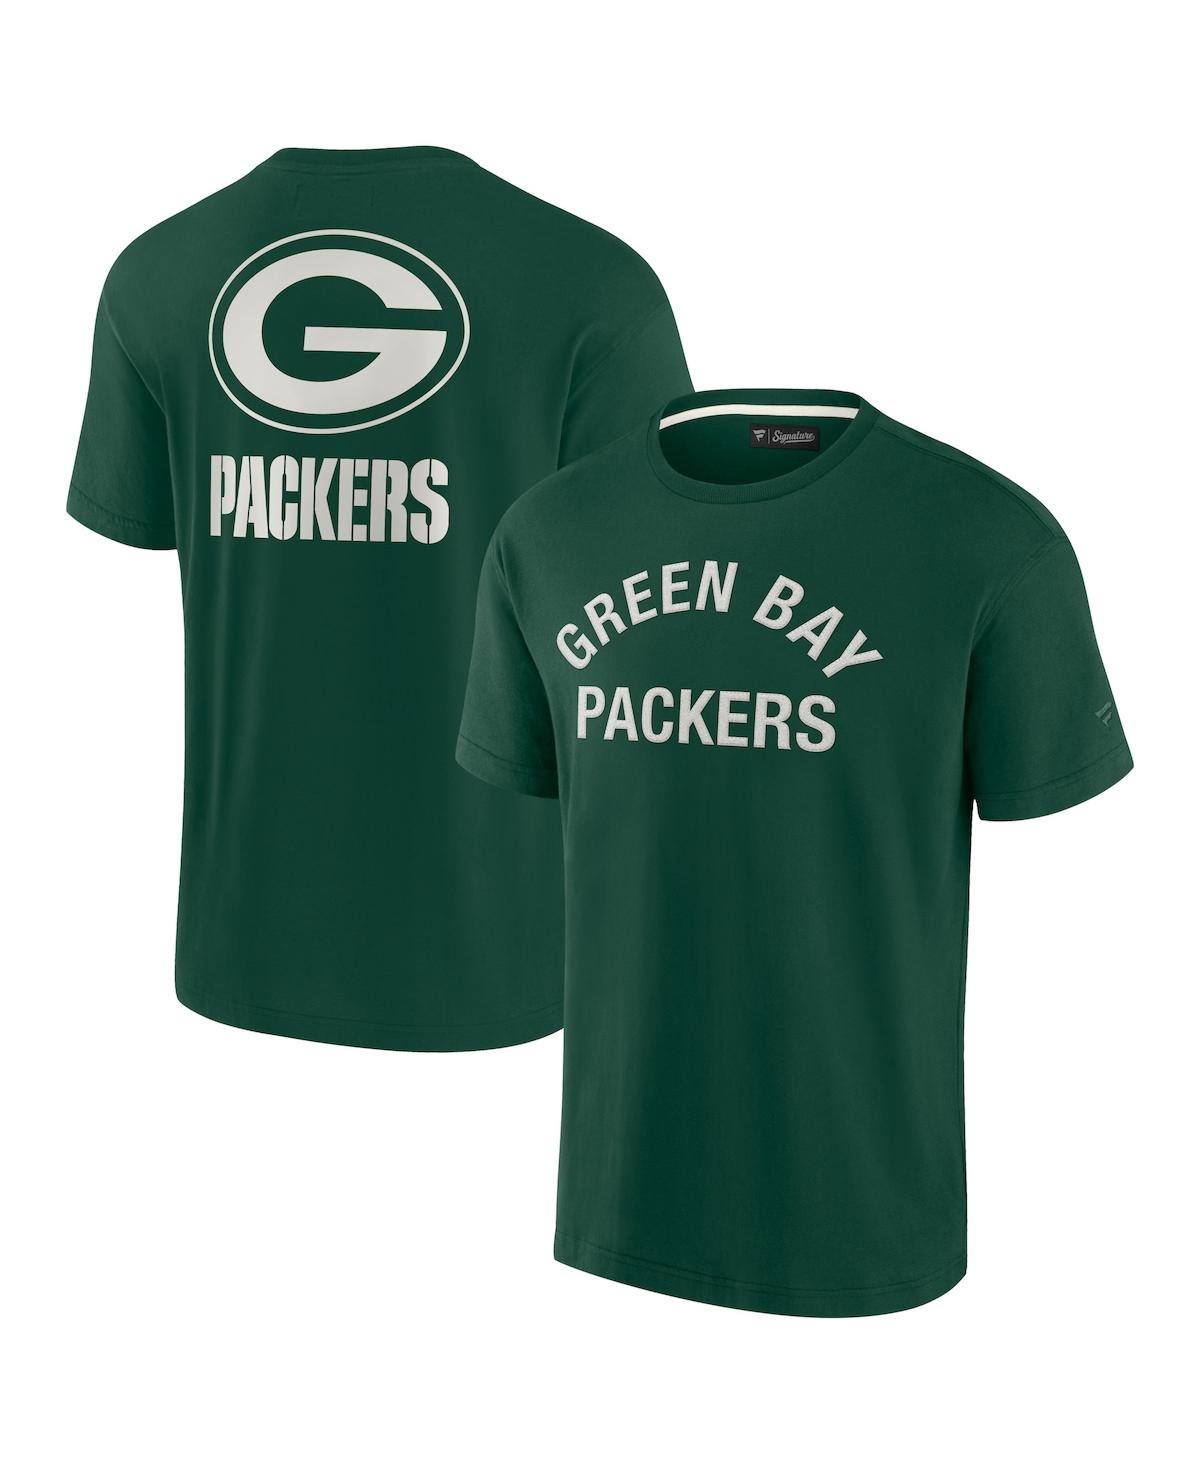 Men's and Women's Fanatics Signature Green Green Bay Packers Super Soft Short Sleeve T-shirt - Green